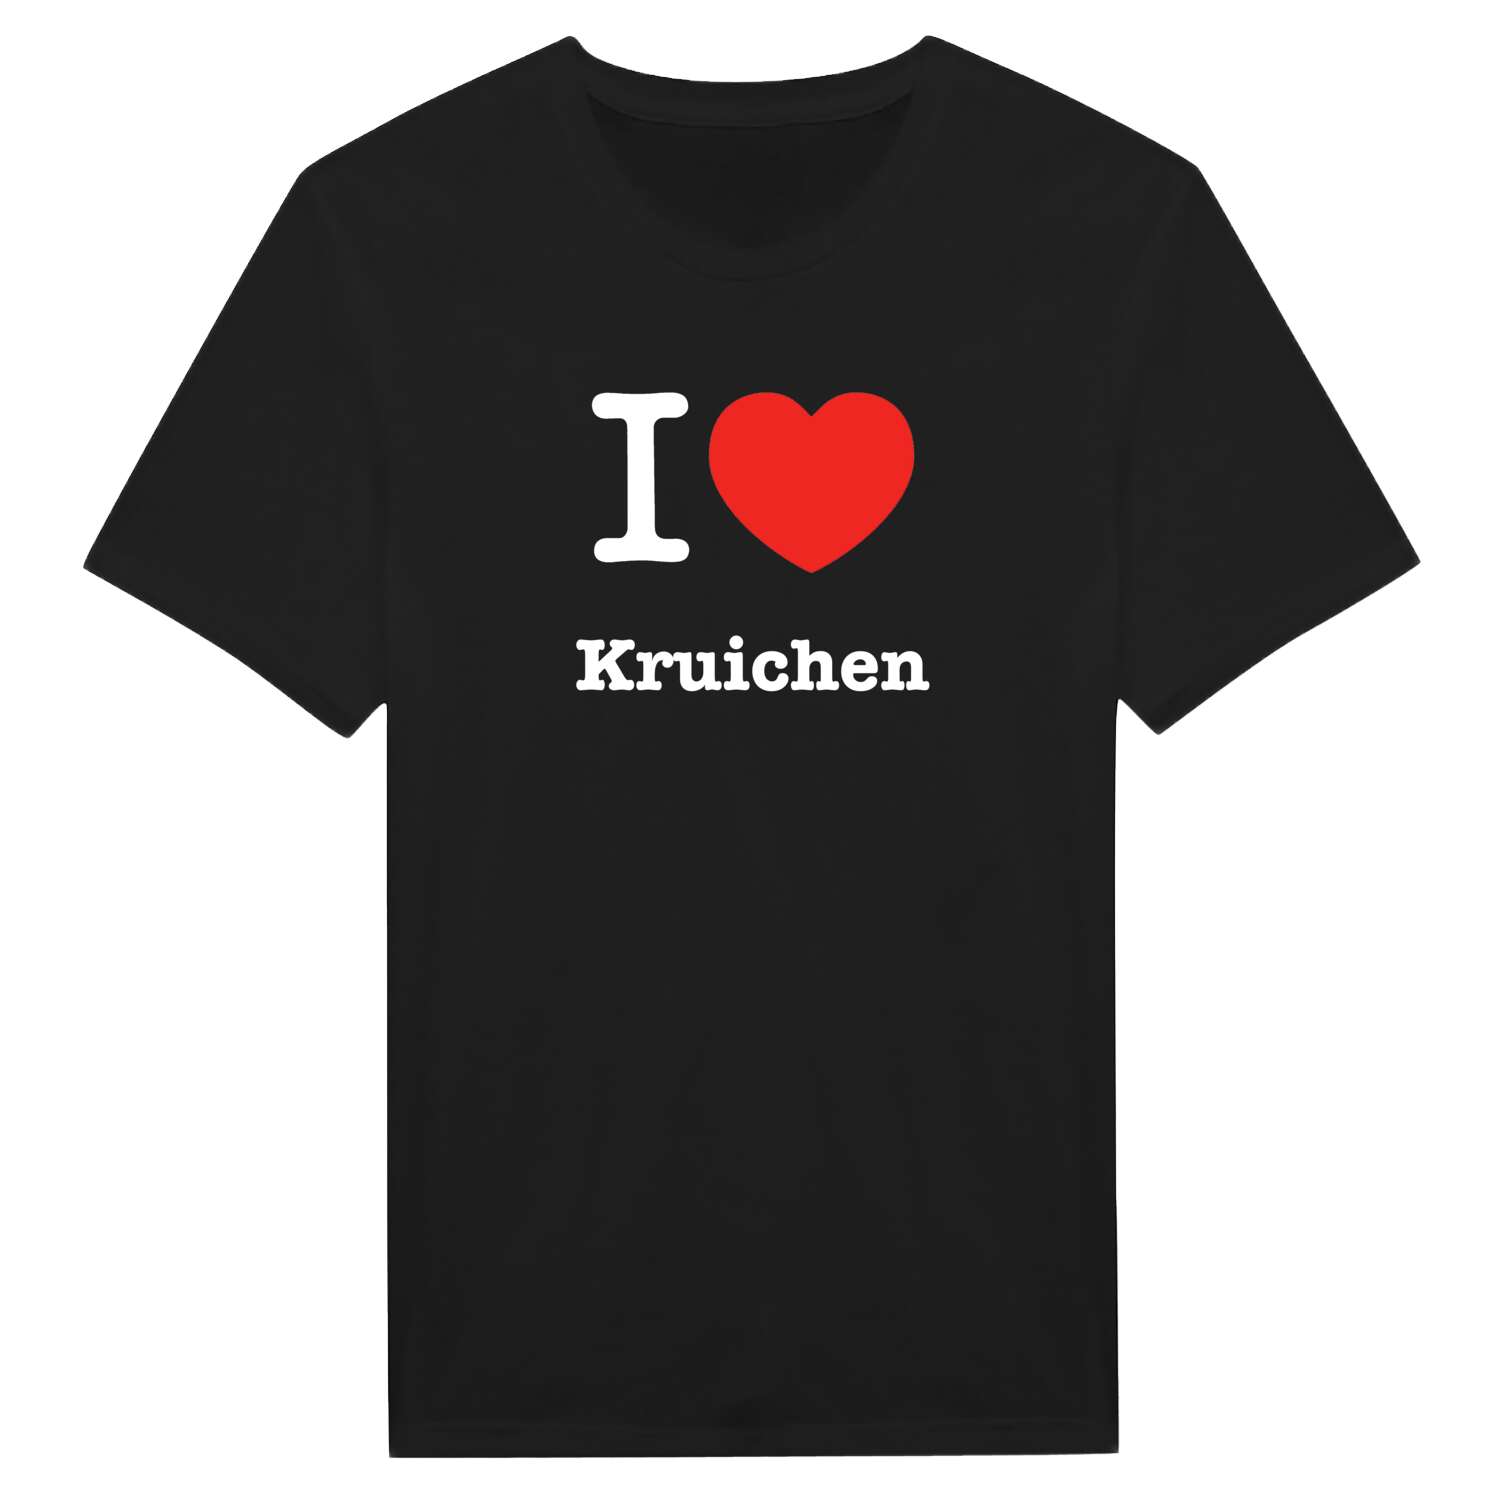 Kruichen T-Shirt »I love«